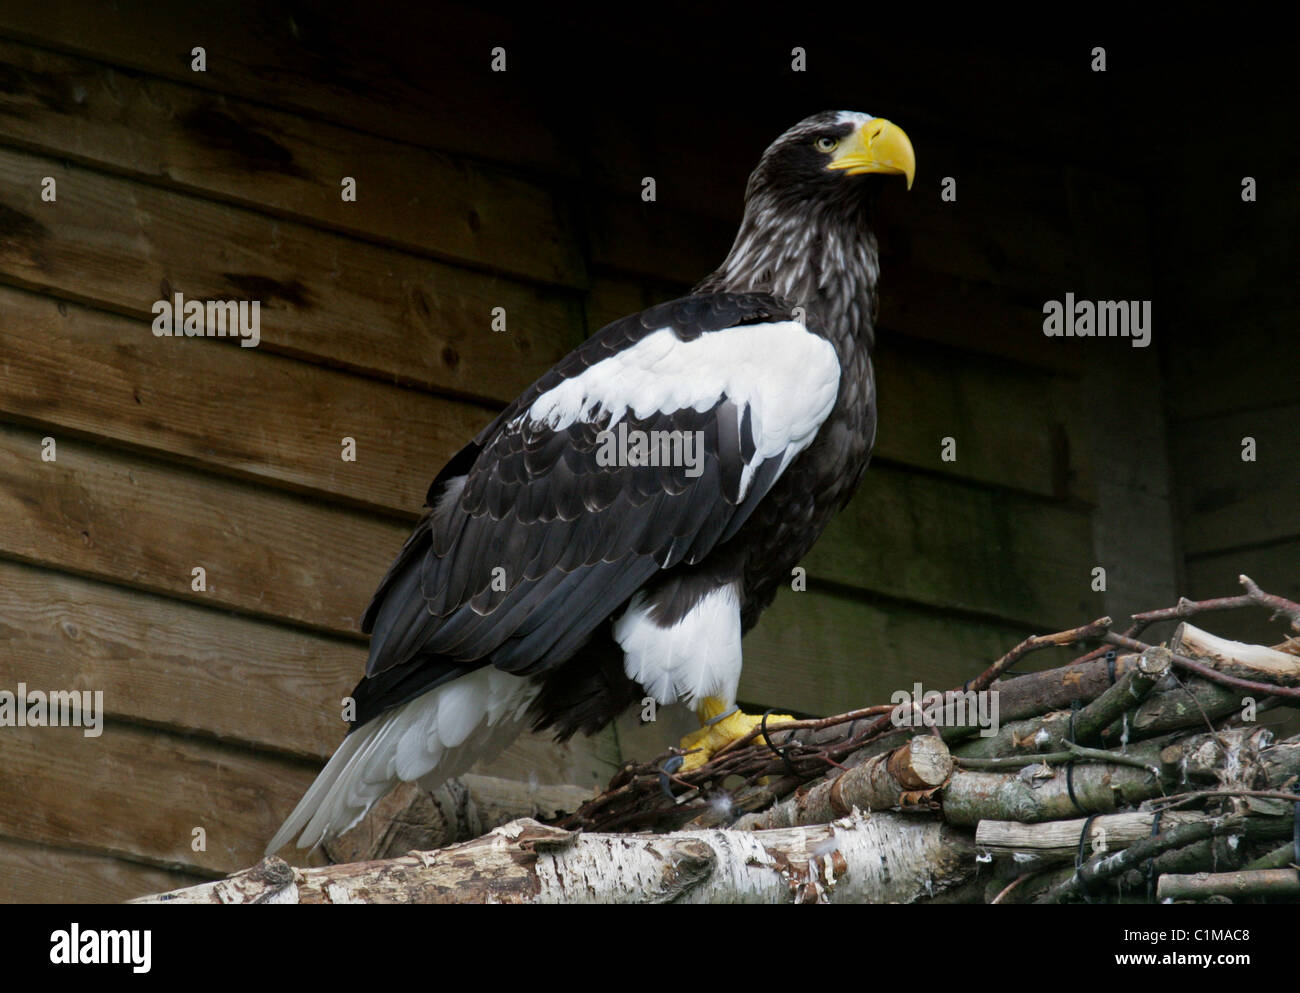 Steller's Sea Eagle, Haliaeetus pelagicus, Accipitrinae. Aka Erne, European Sea Eagle, Gray Sea Eagle, White-Tailed Eagle. Stock Photo